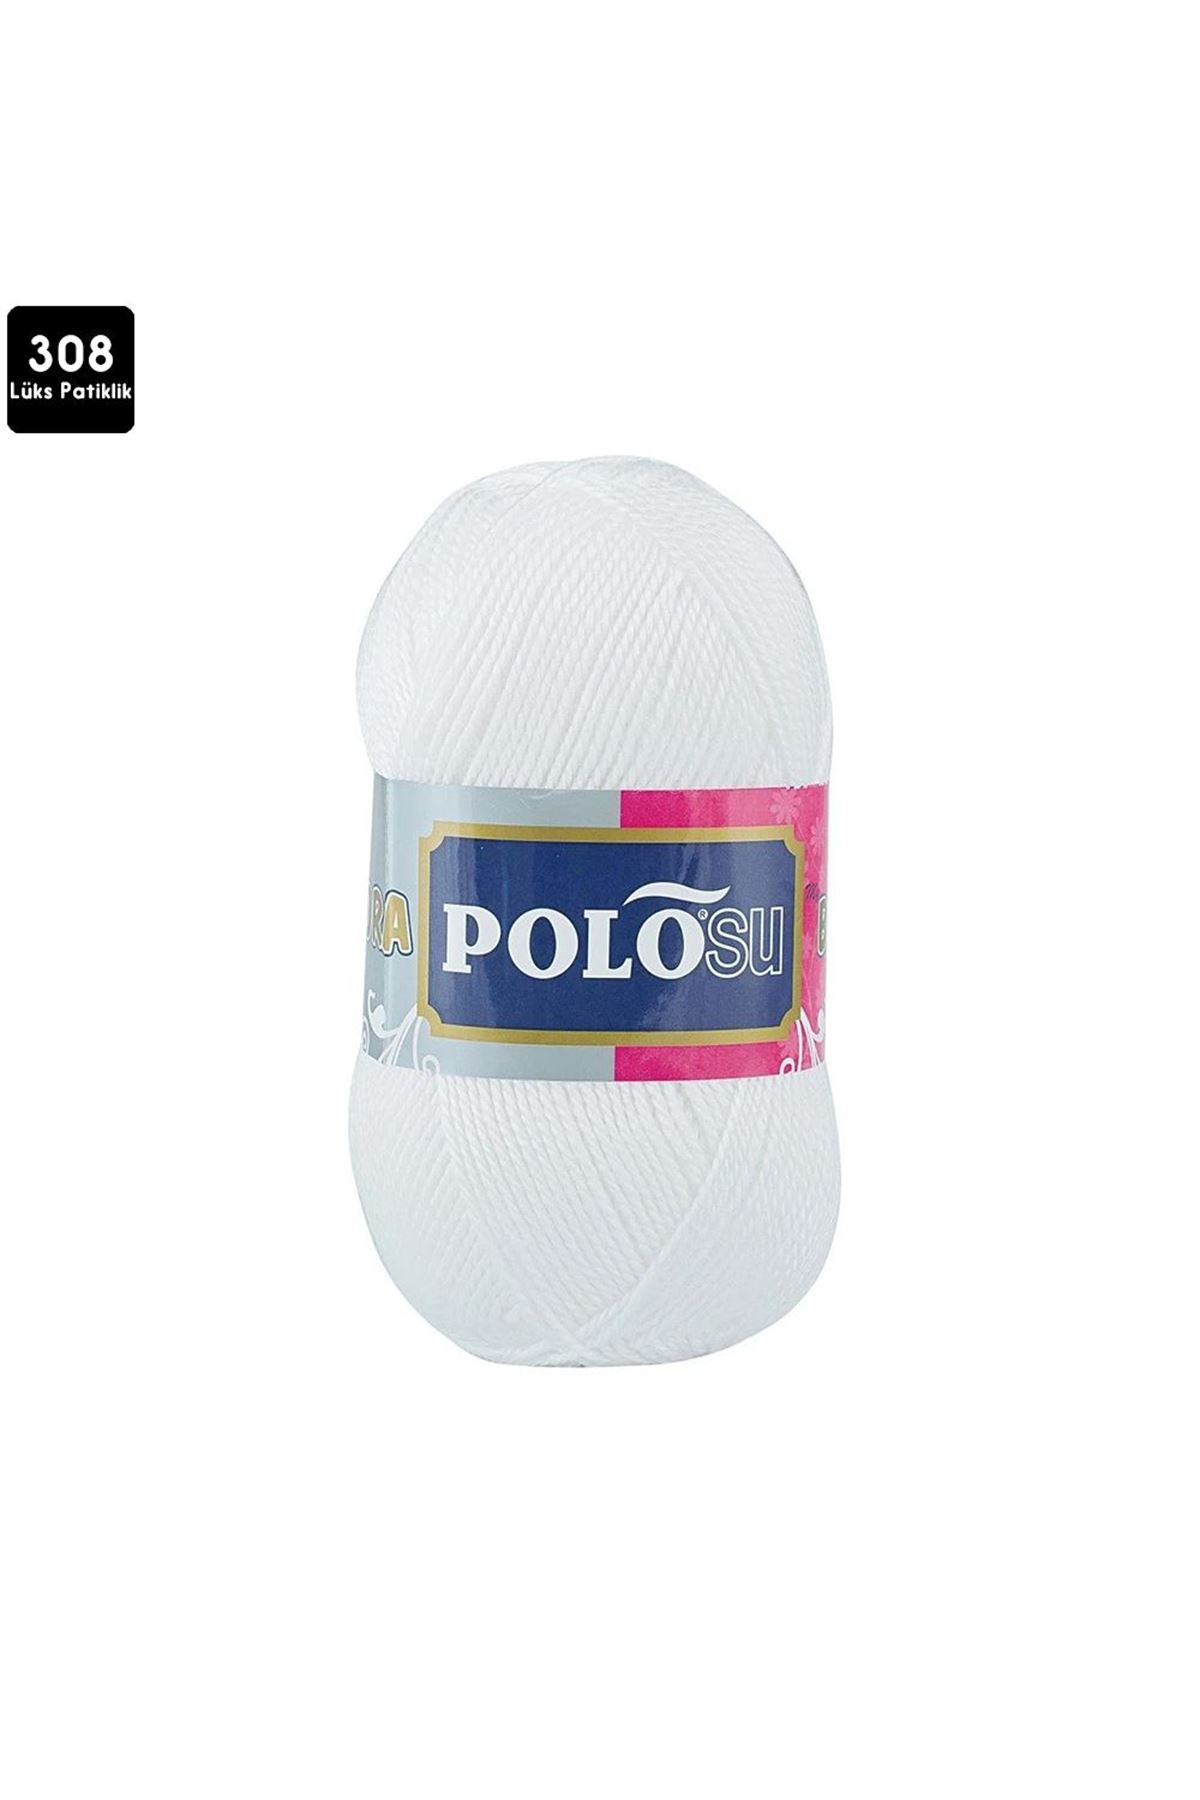 PoloSU Lüks Patiklik Renk No:308